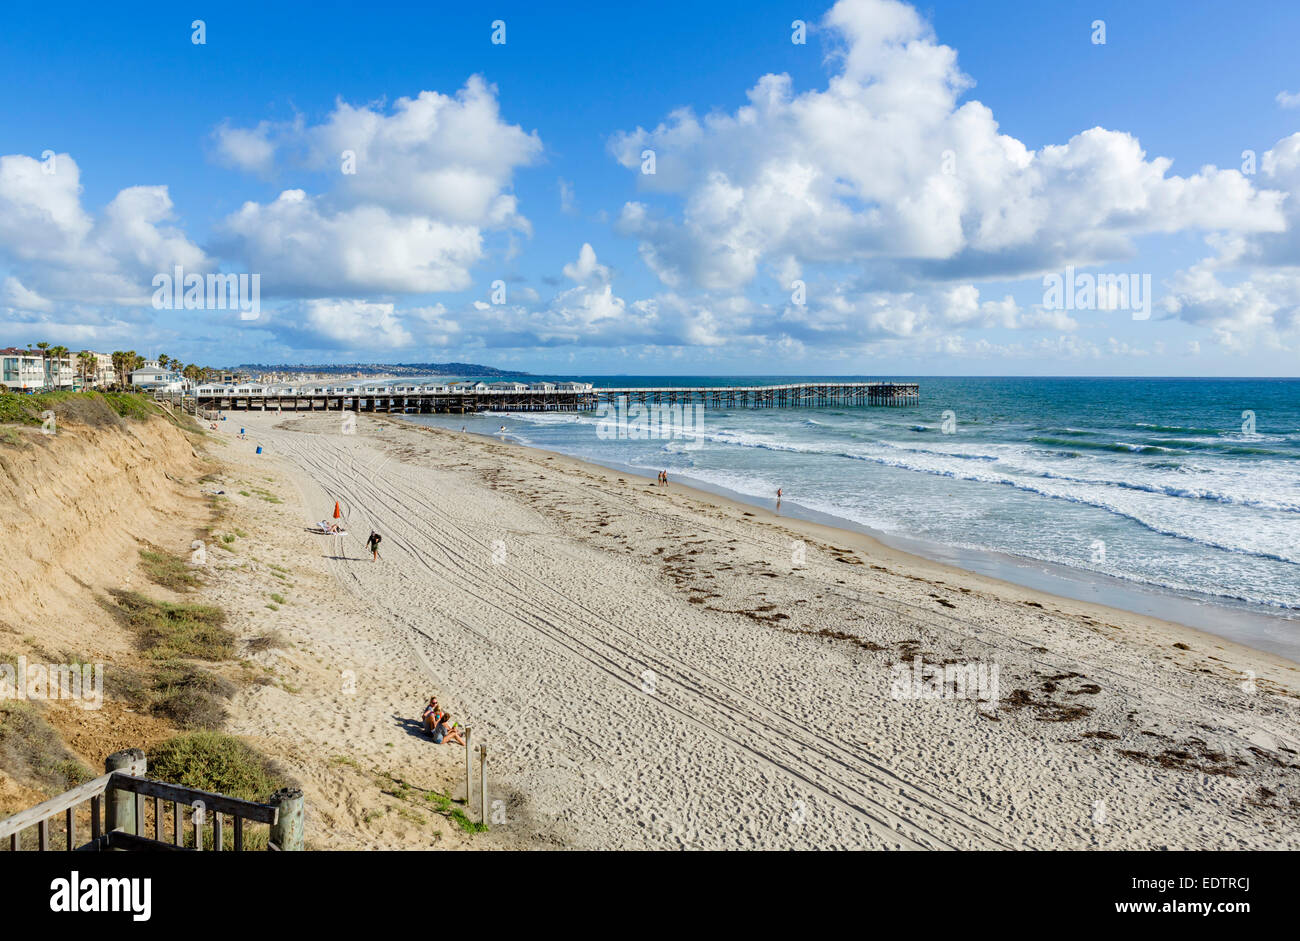 El muelle y la playa de Ocean Front Walk, Mission Beach, San Diego, California, EE.UU. Foto de stock